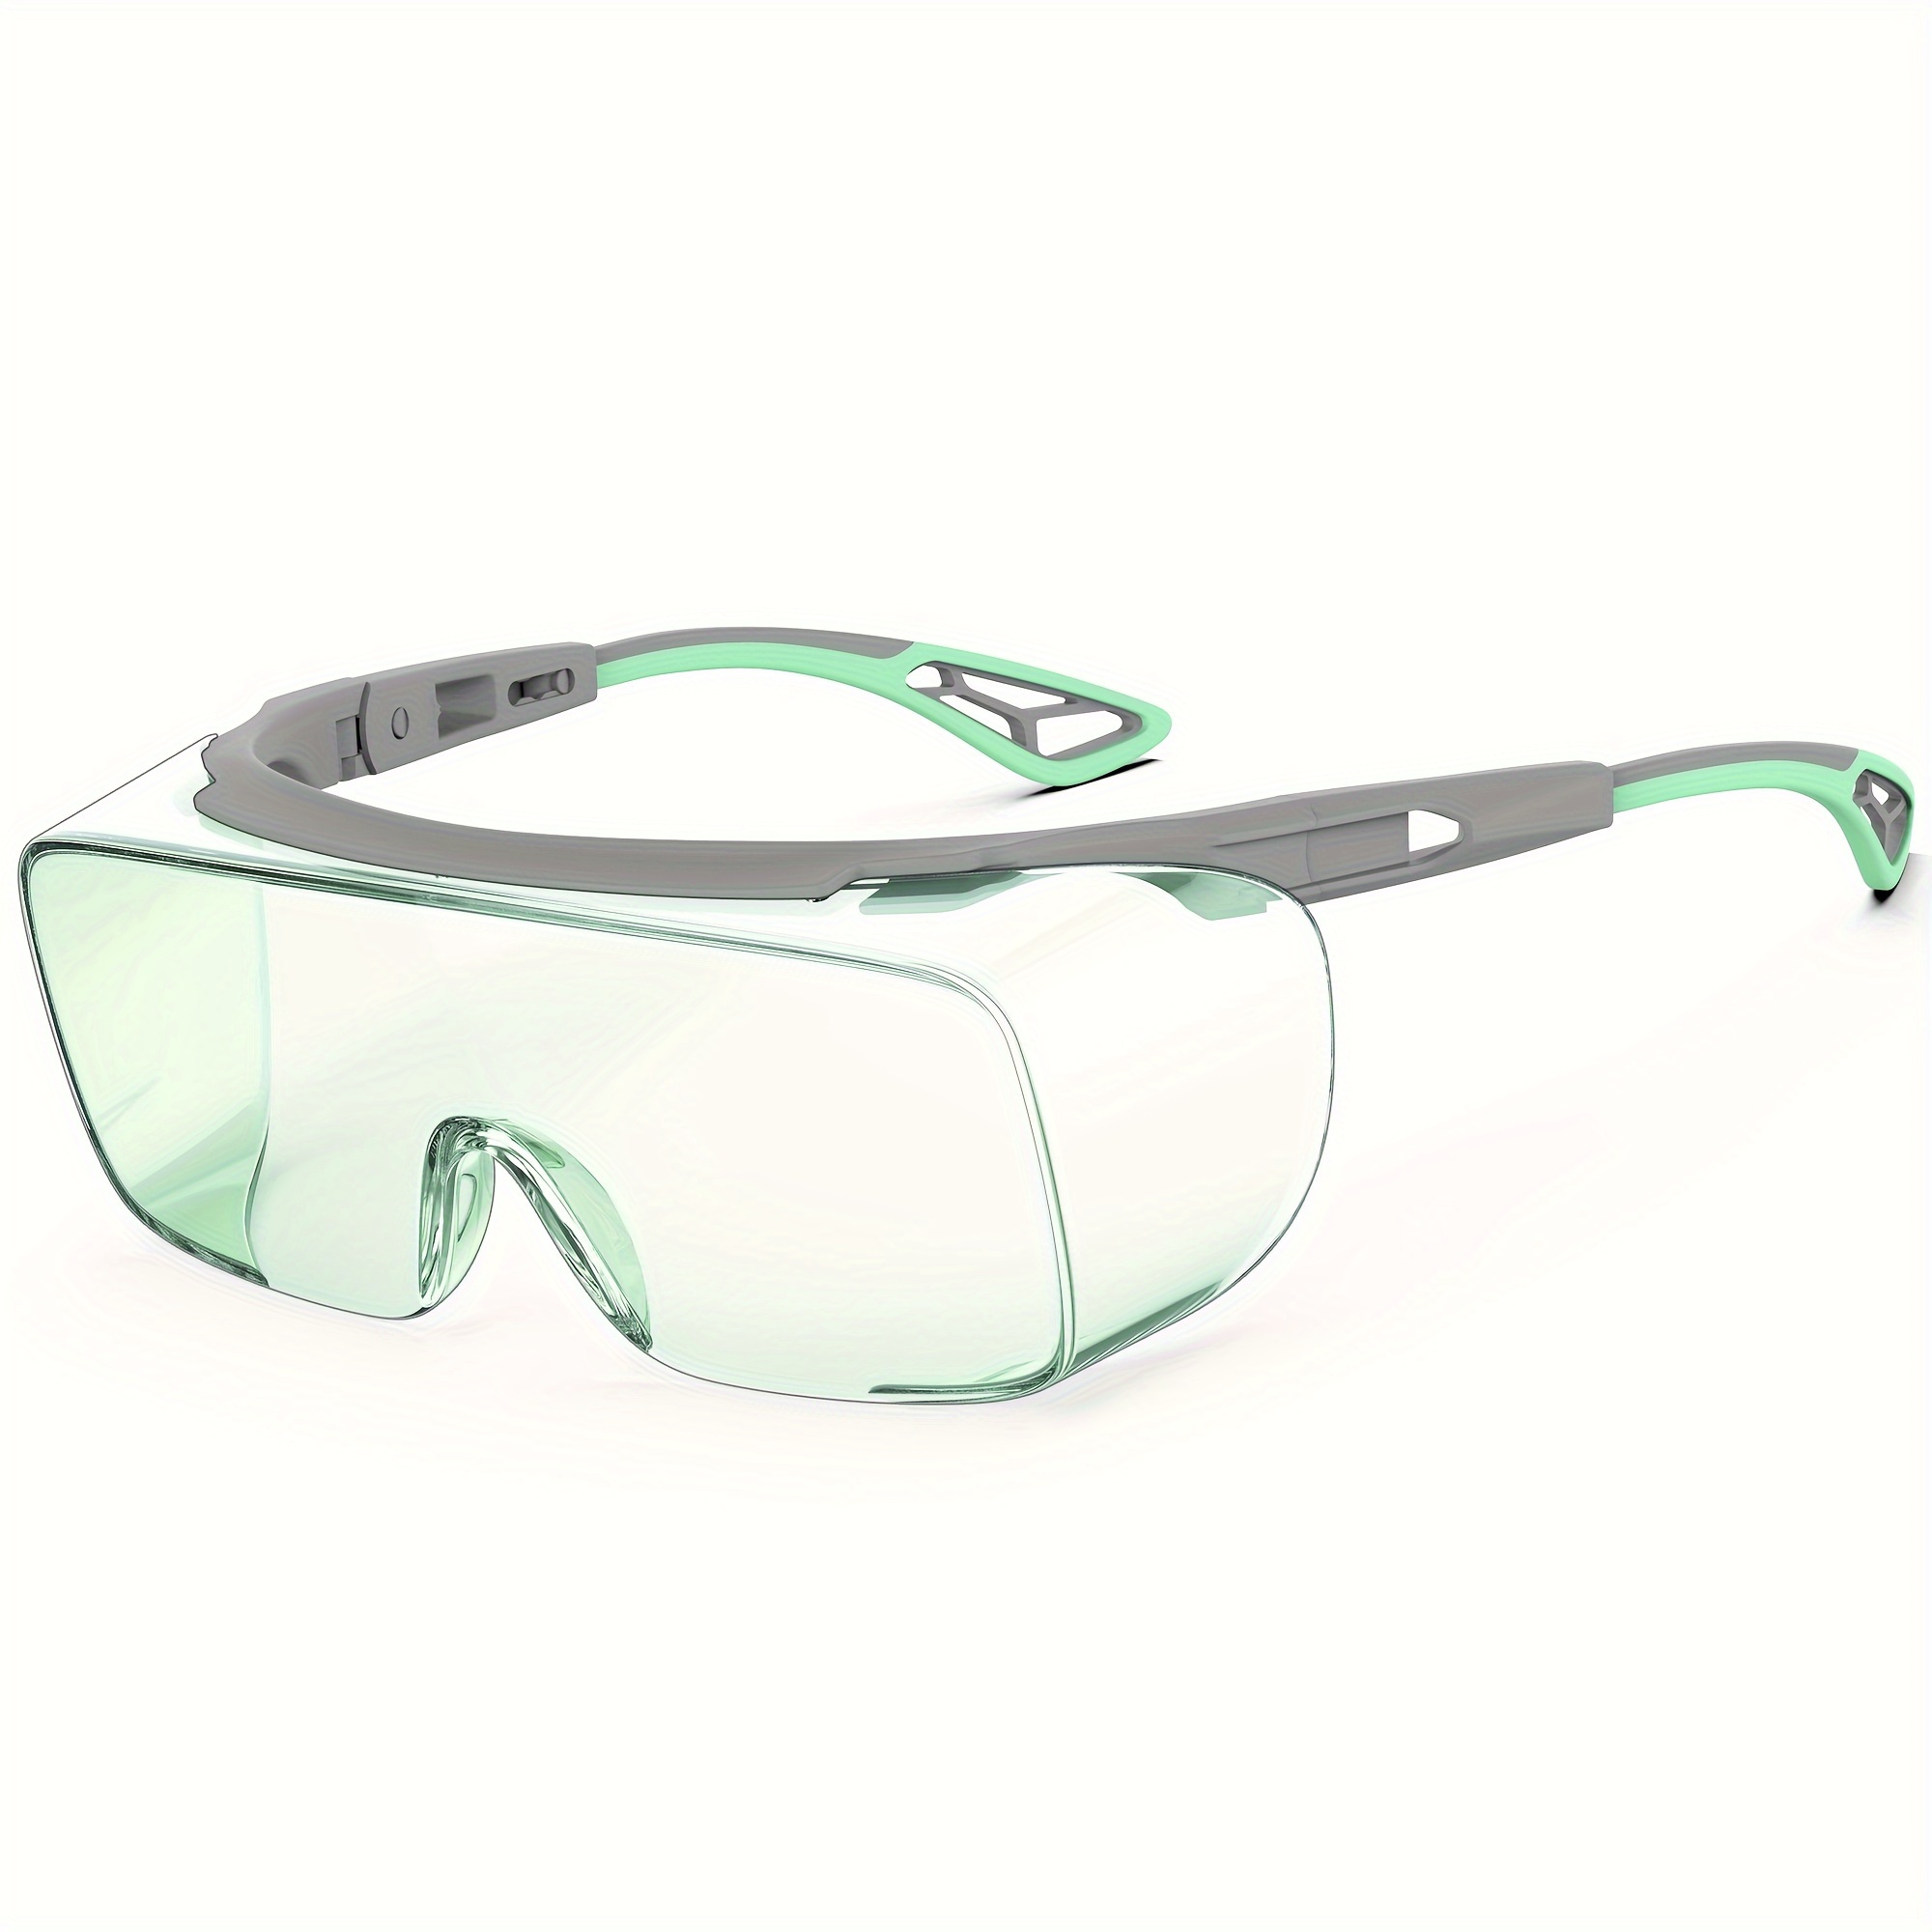 Johiux 4 Par Gafas Proteccion,Anti Niebla Gafas Seguridad,Gafas de  Proteccion Trabajo,Gafas L